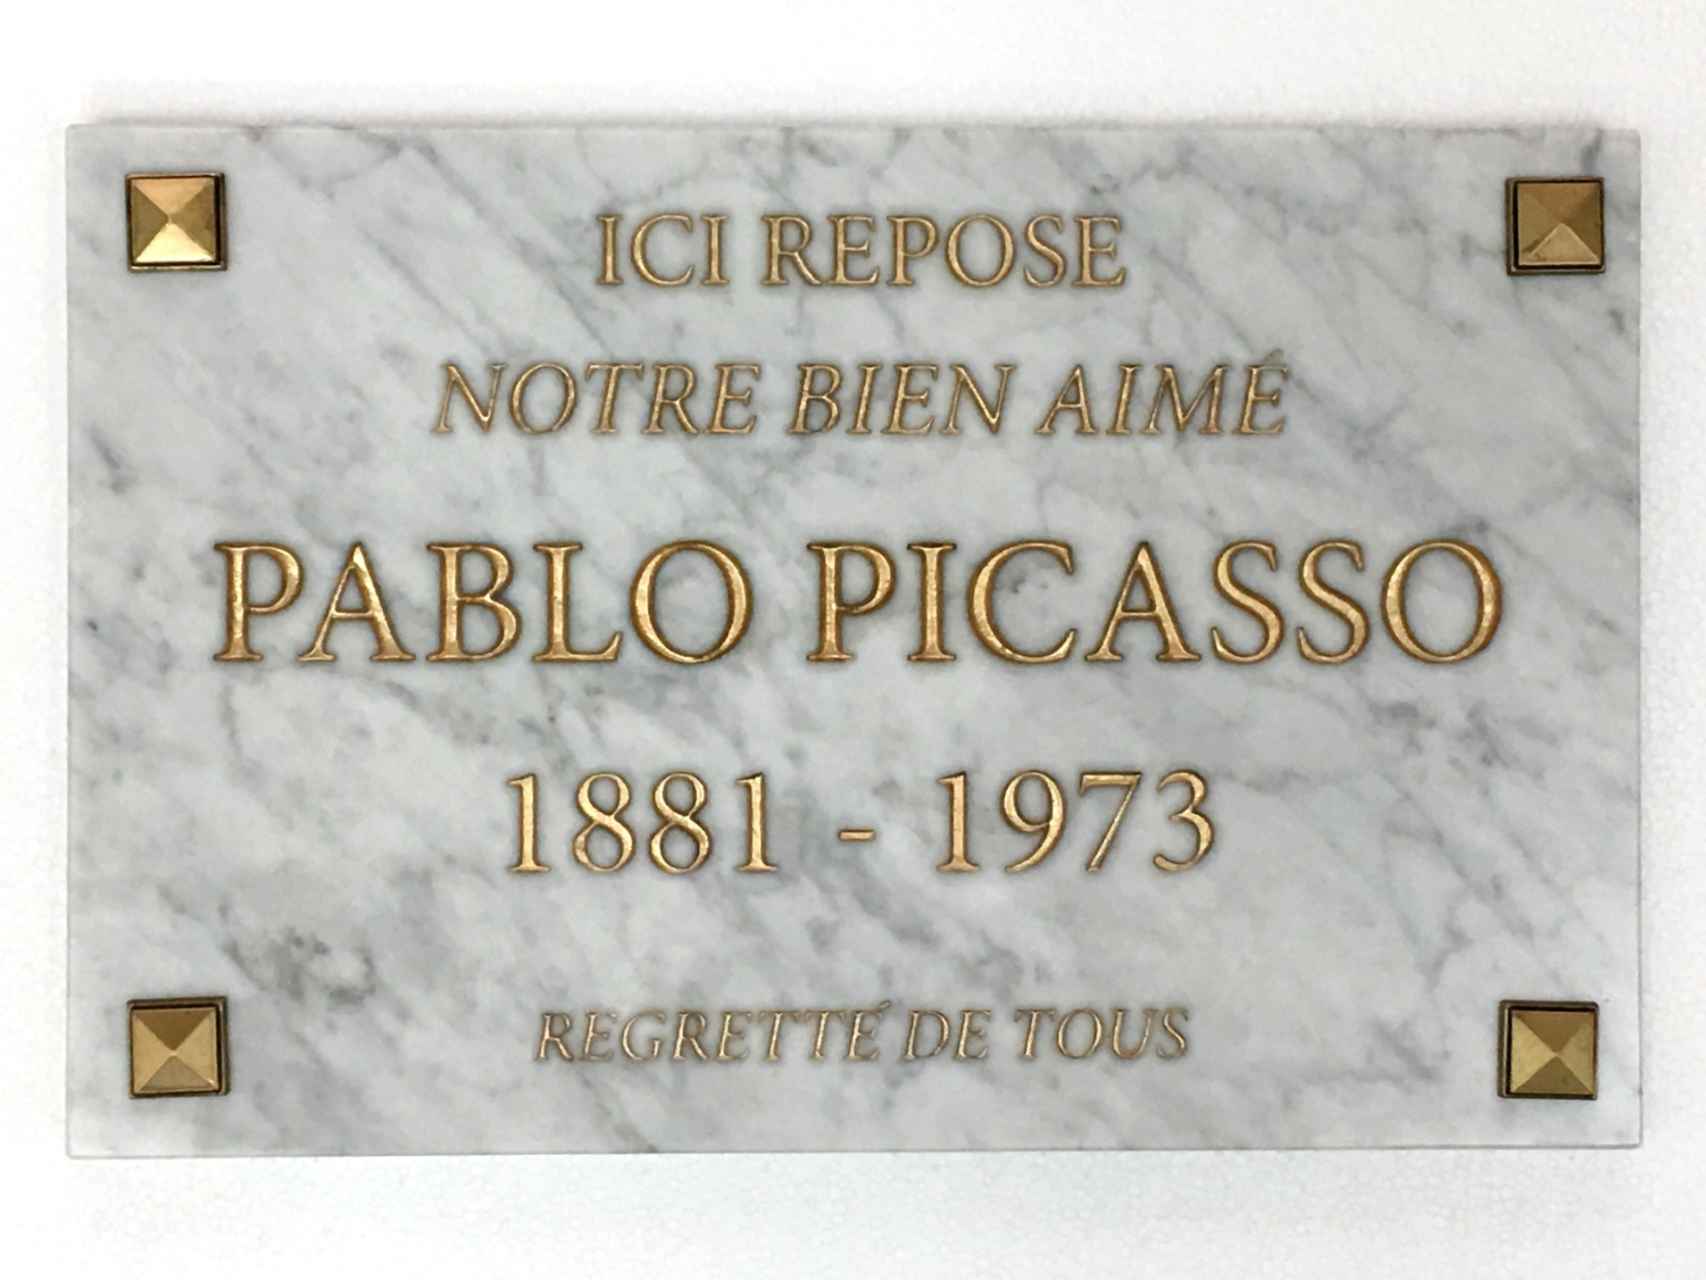 Lápida de Pablo Picasso hecha para la ocasión.